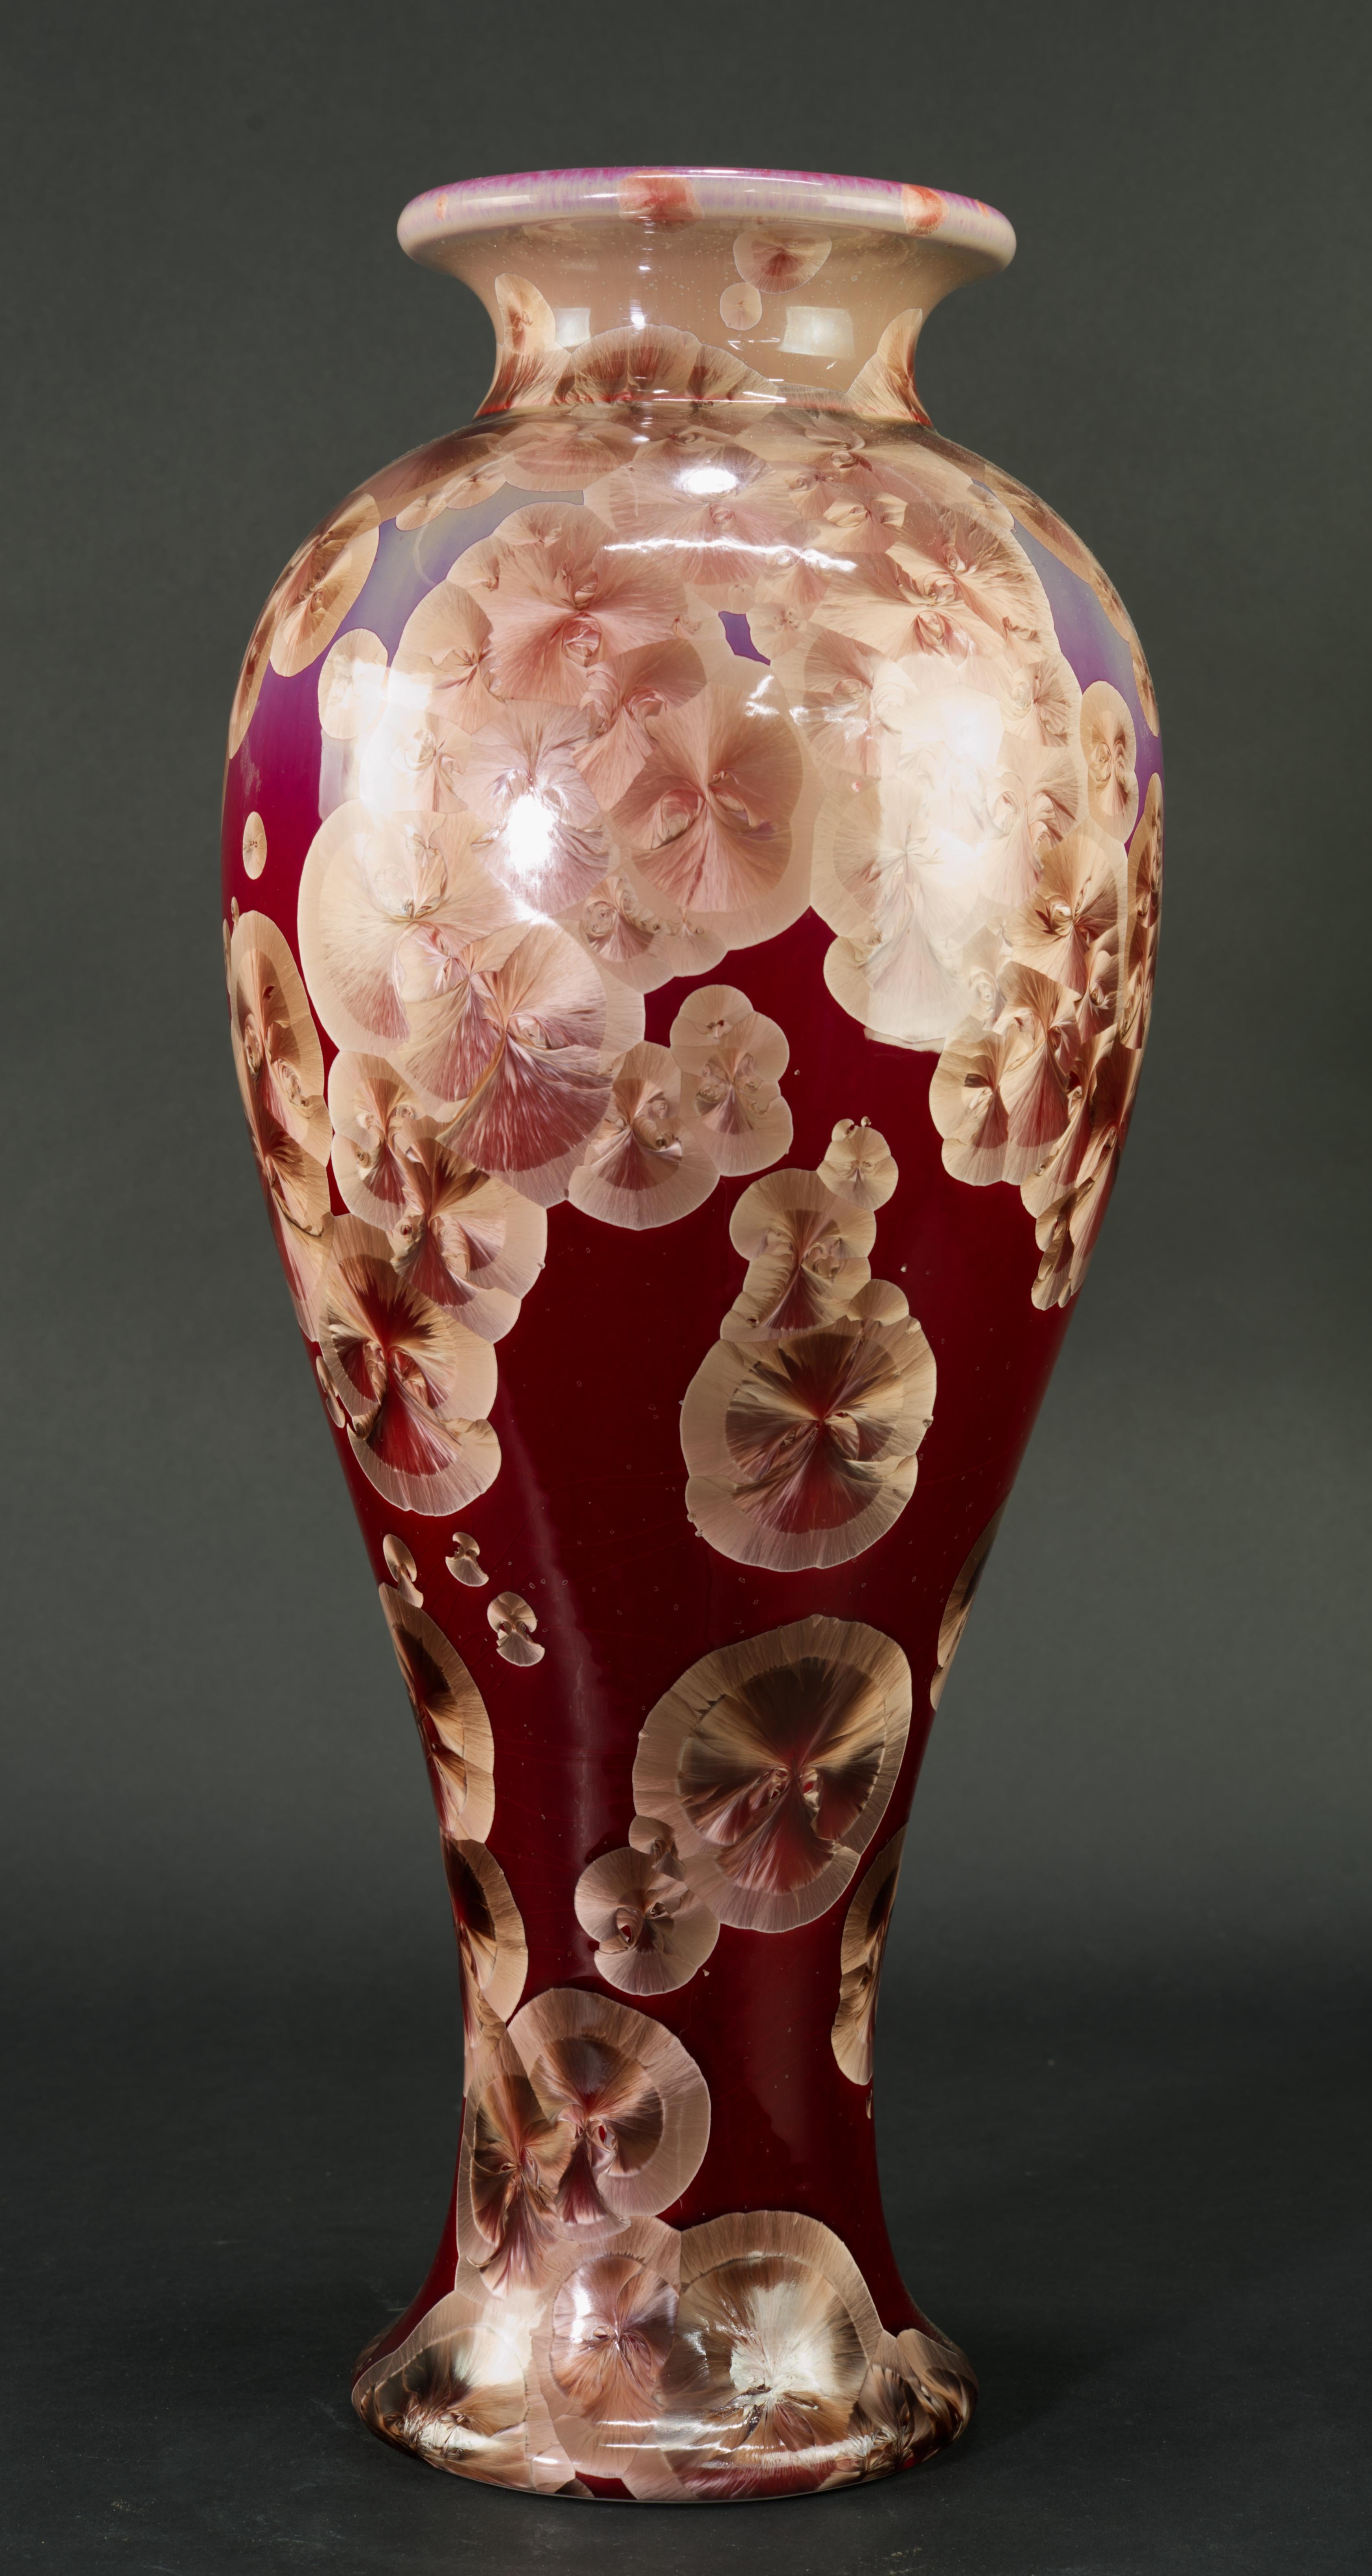 
Le vase monumental en céramique de Studio pottery est décoré d'une glaçure cristalline dans une palette saisissante de rouge foncé et de beige. Le vase a été jeté à la main sur un tour ; les cristaux de couleur beige sur une base de couleur ombre,